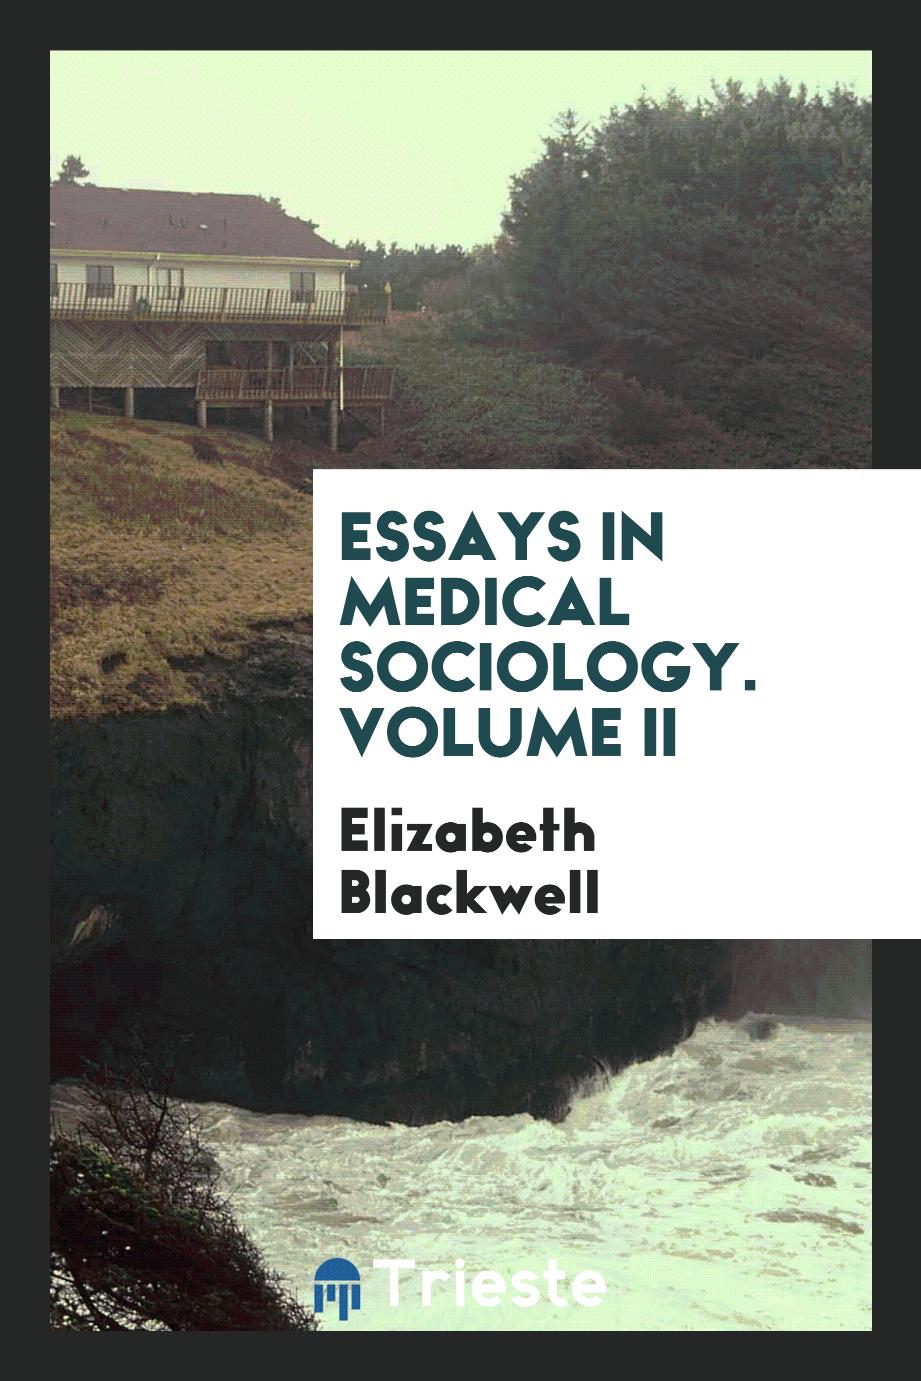 Elizabeth Blackwell - Essays in medical sociology. Volume II